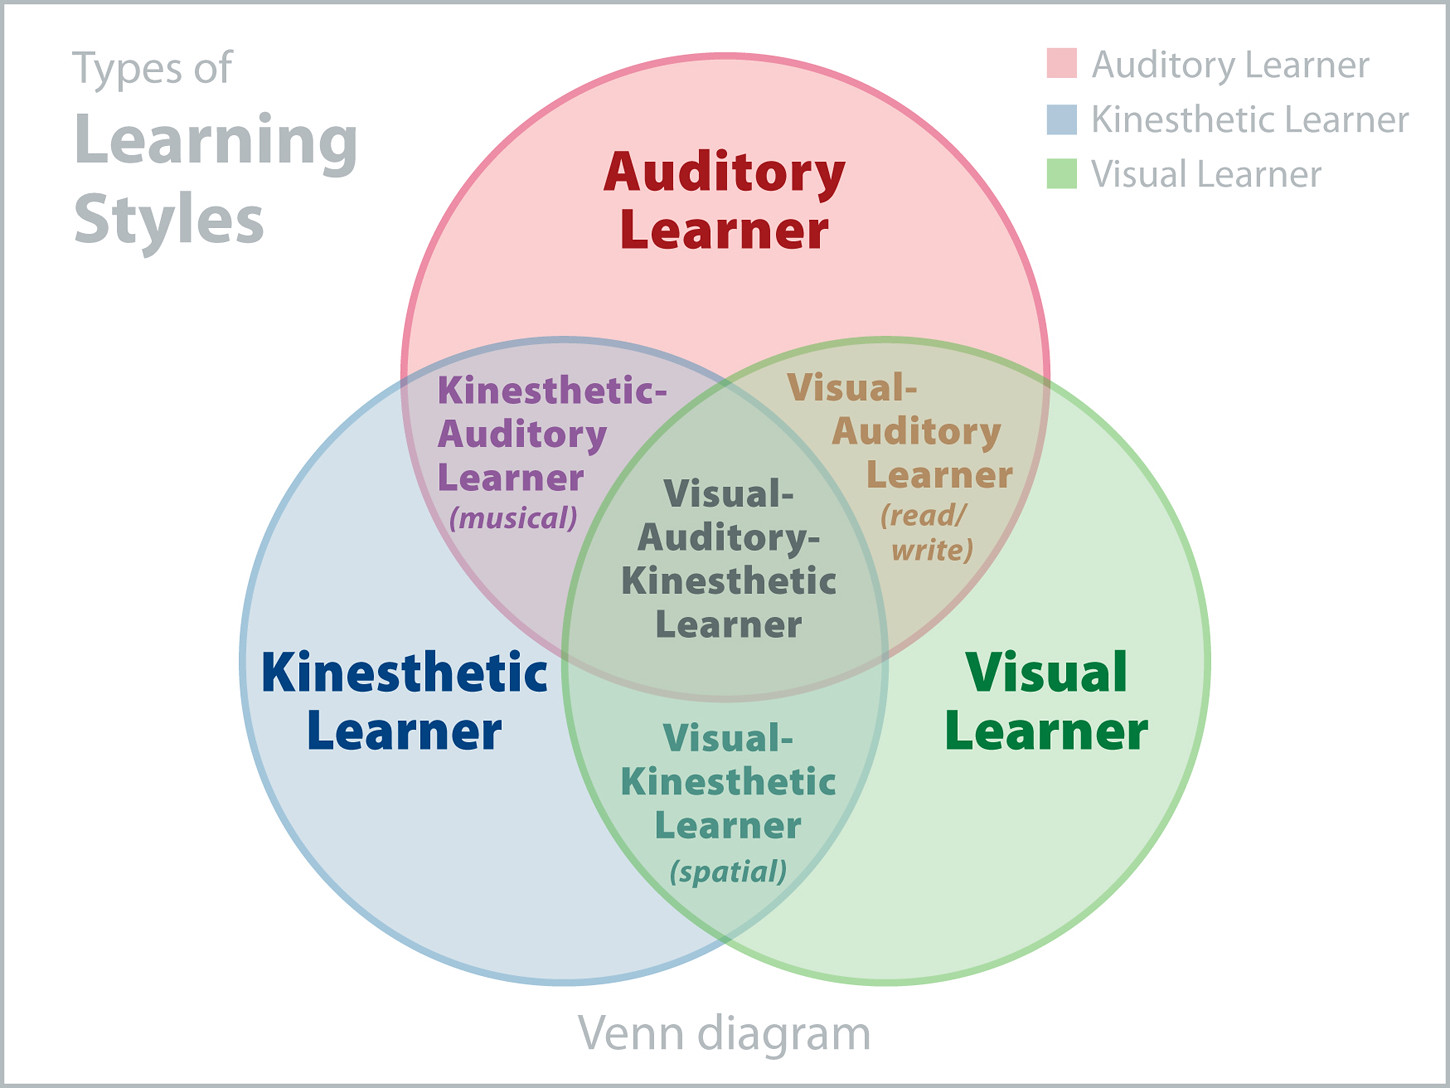 Imagem para o artigo sobre como aprender inglês com dicas para cada estilo de aprendizagem.